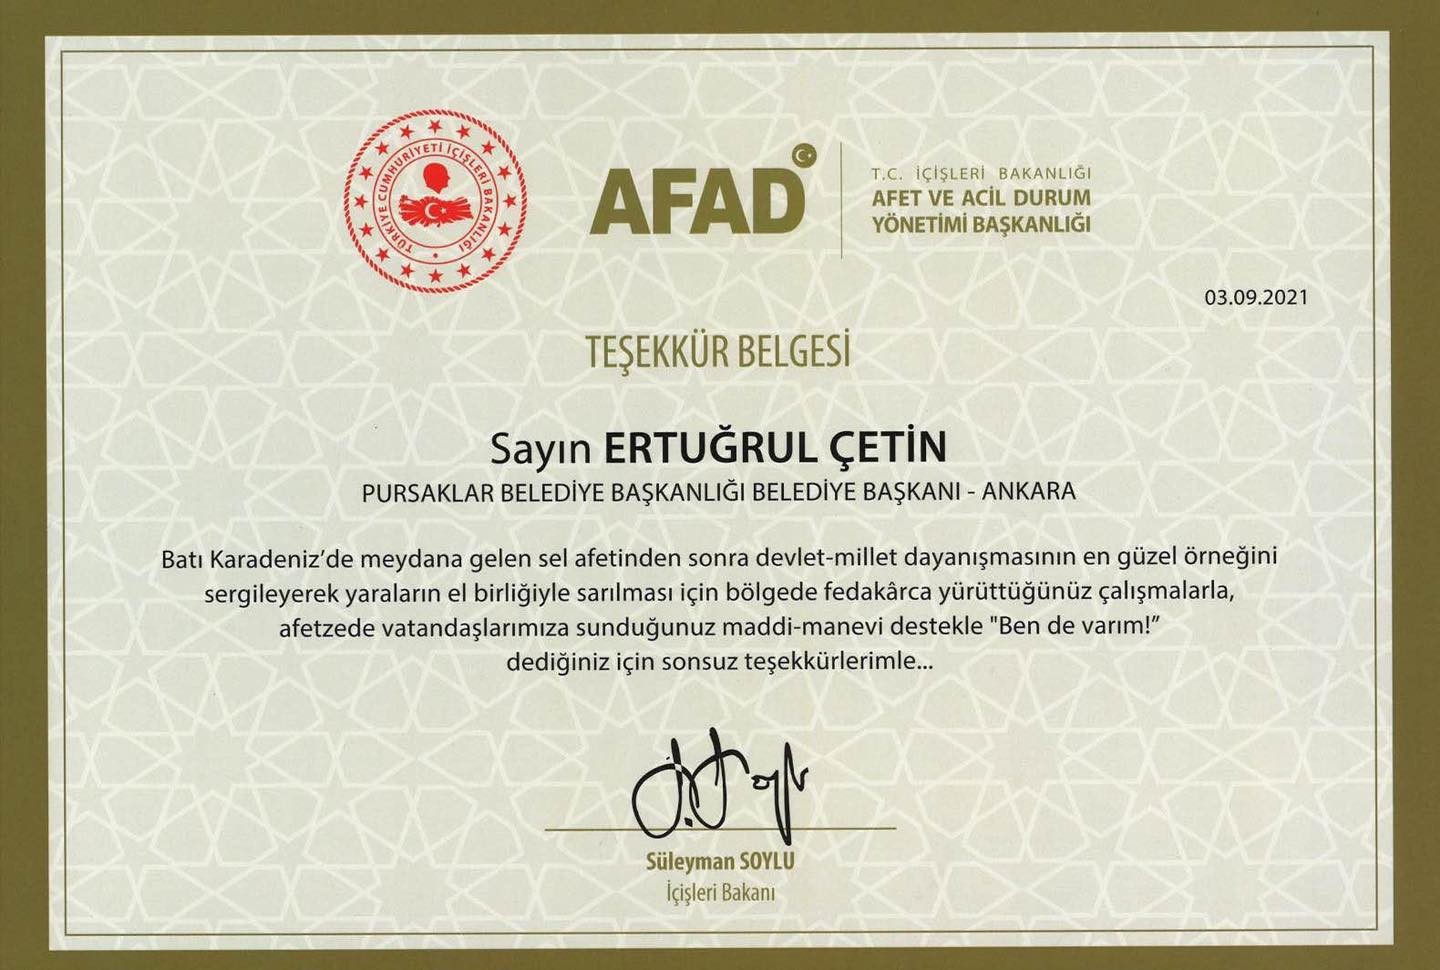 Bakan Süleyman Soylu’dan, Başkan Ertuğrul Çetin’e teşekkür belgesi #ankara